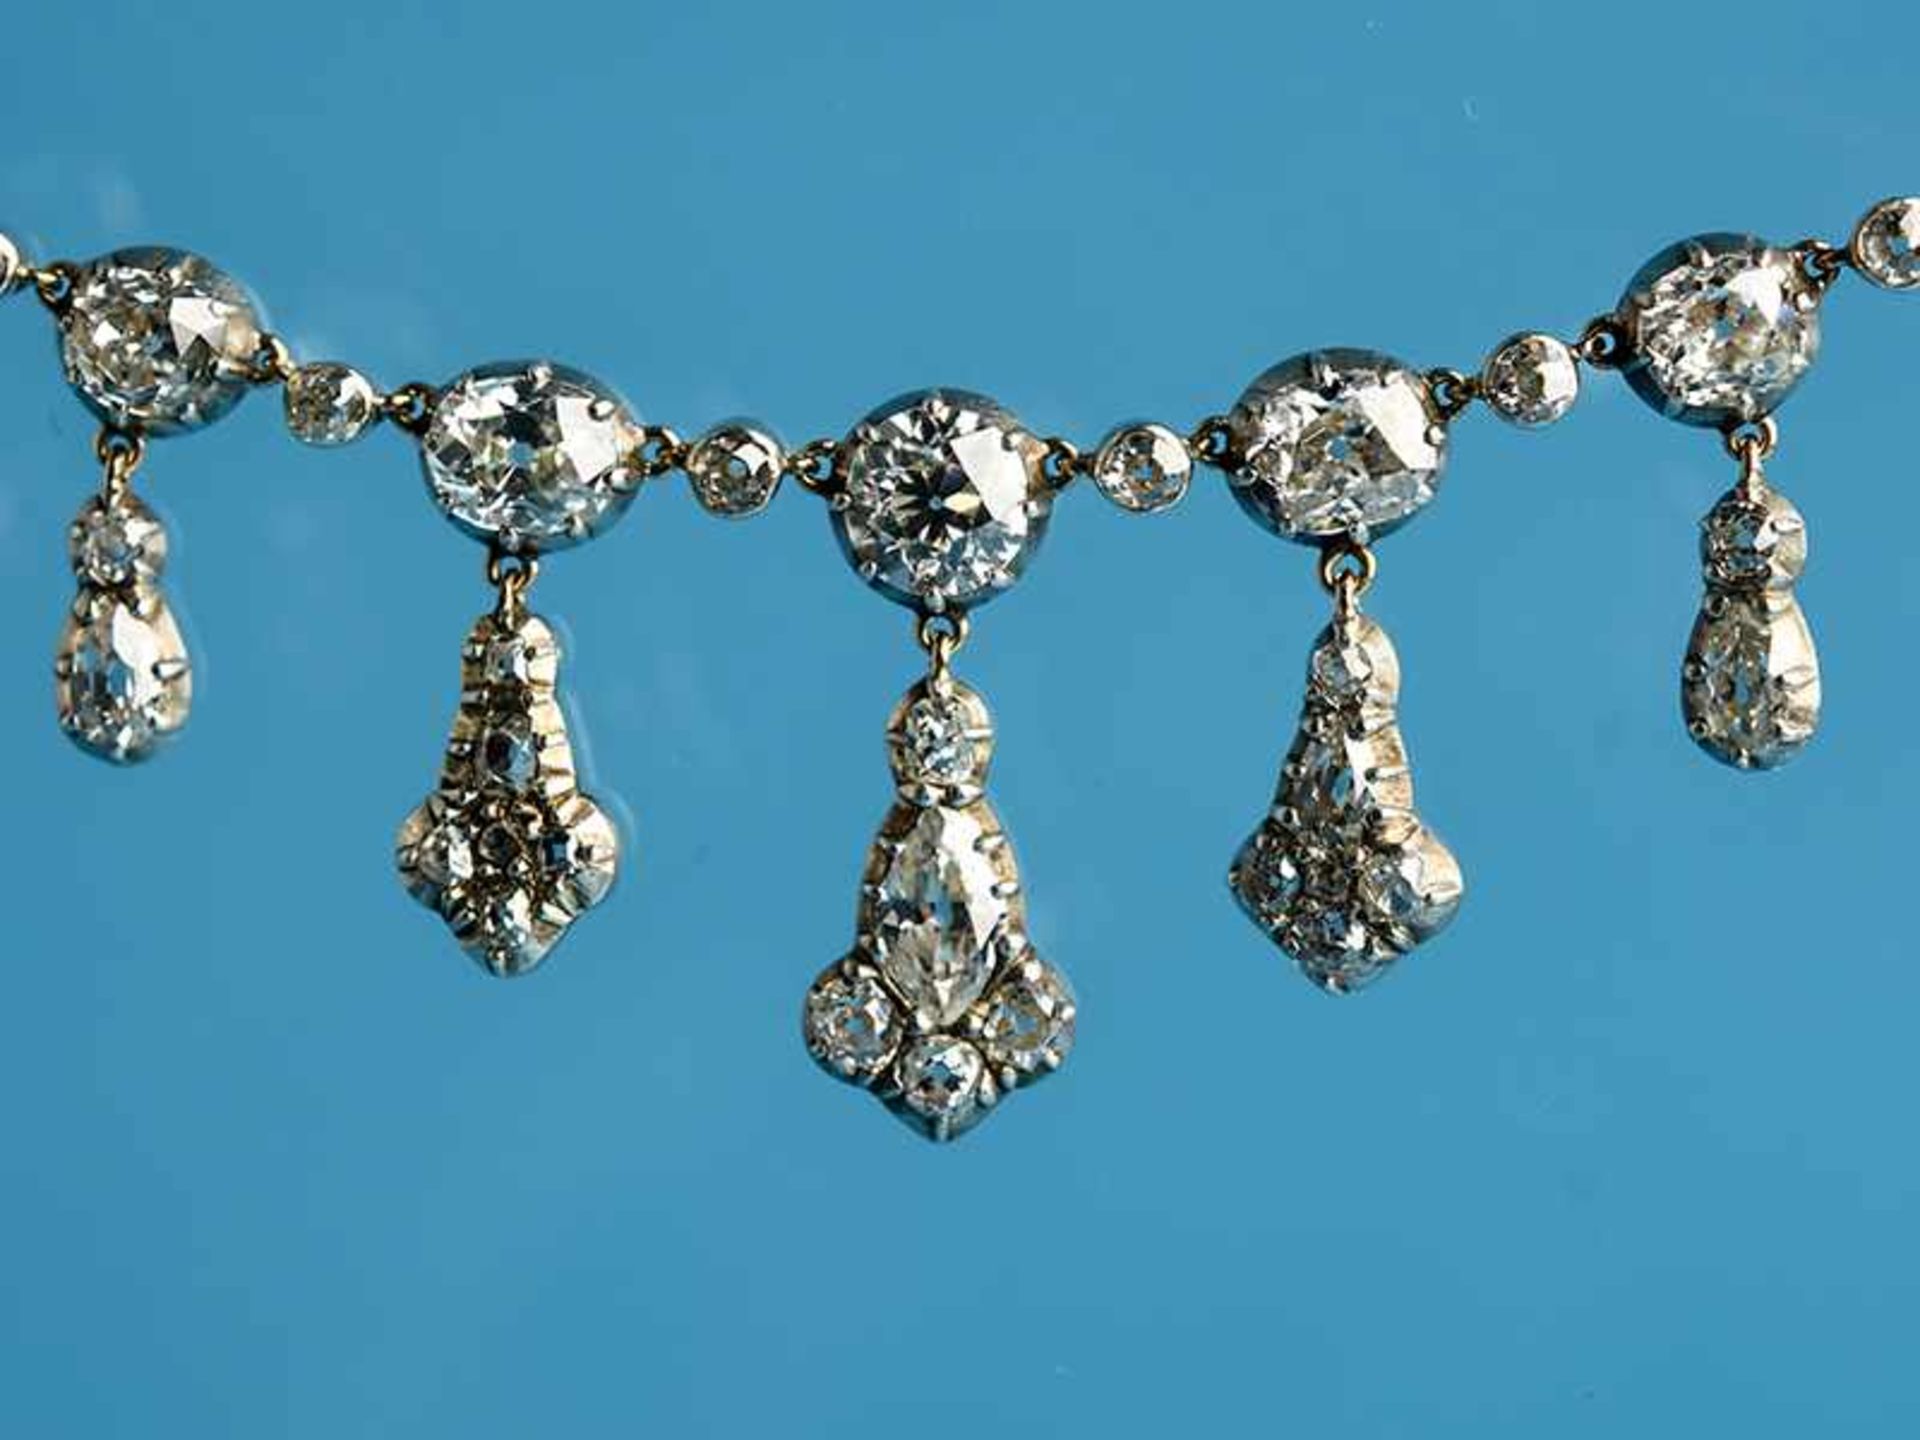 Spätviktorianisches Prunkcollier mit reichhaltigem Altschliff-Diamantenbesatz, zusammen ca. 22 ct, - Bild 2 aus 5